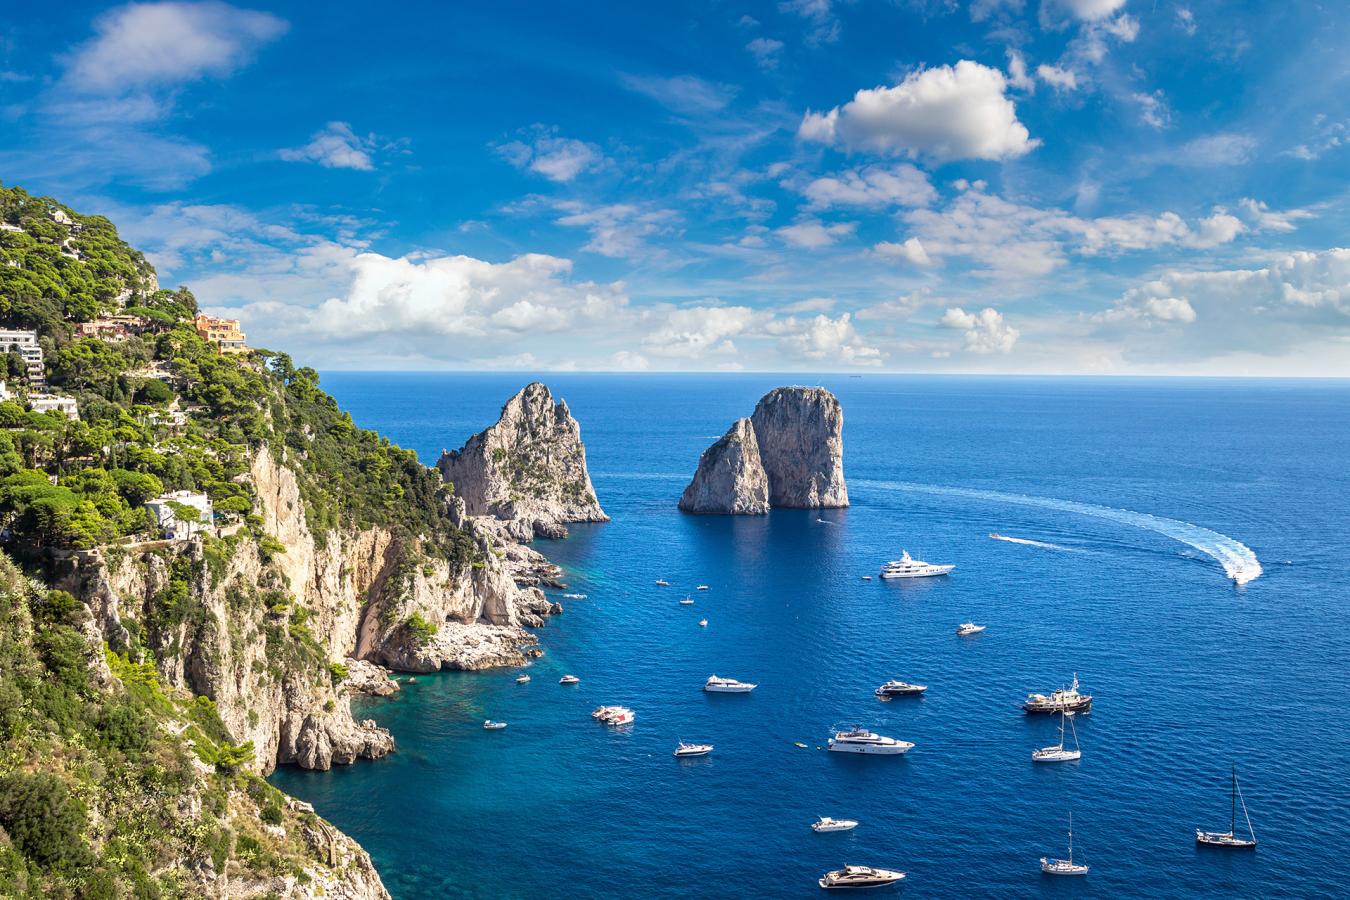 Boat Tours of Capri and the Amalfi Coast